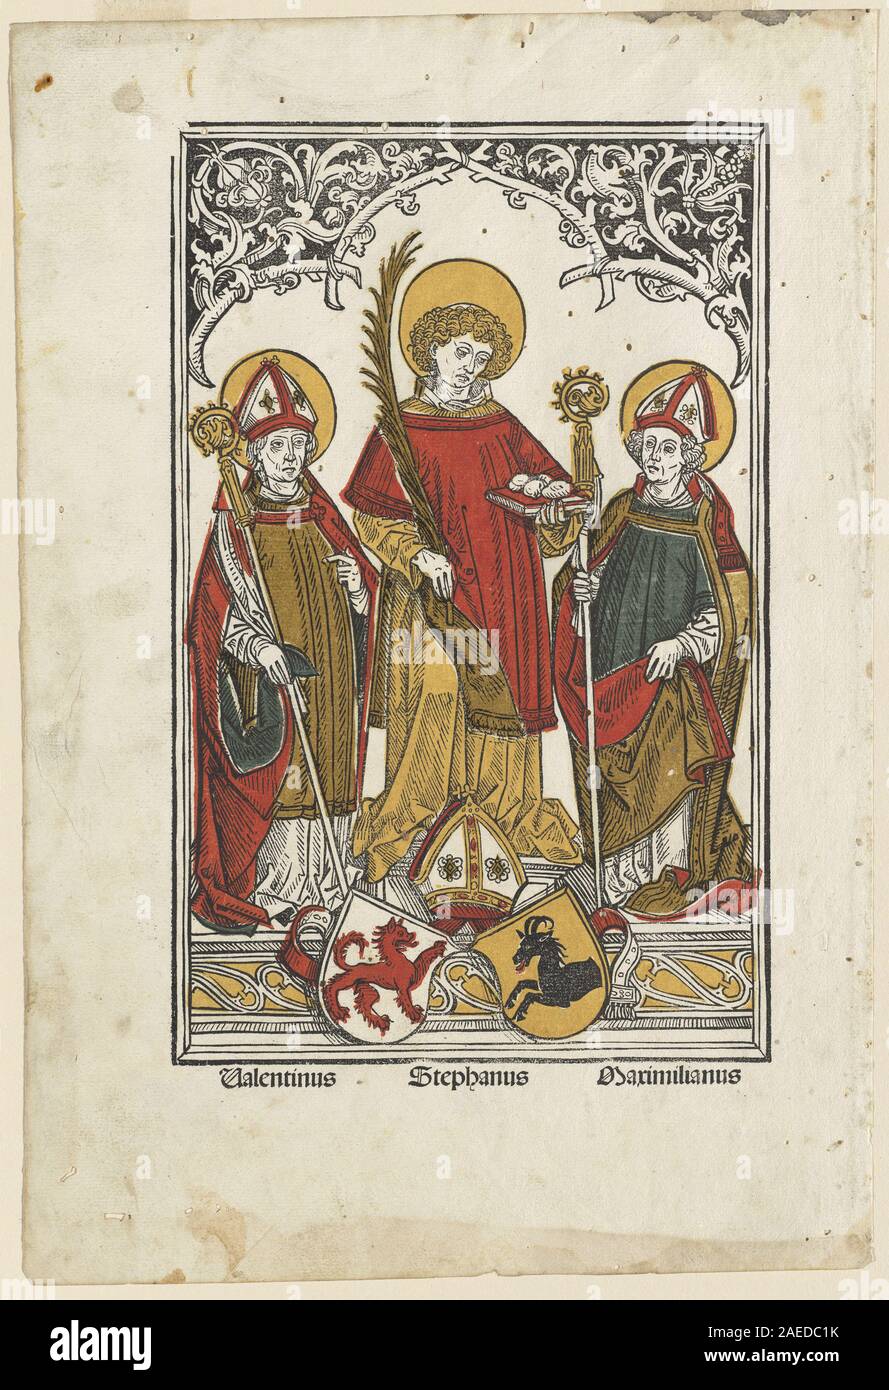 Hans Burgkmair ICH, St. Valentin, St. Stephan und St. Maximilian, 1498 St. Valentin, St. Stephan und St. Maximilian; 1498 Datum Stockfoto